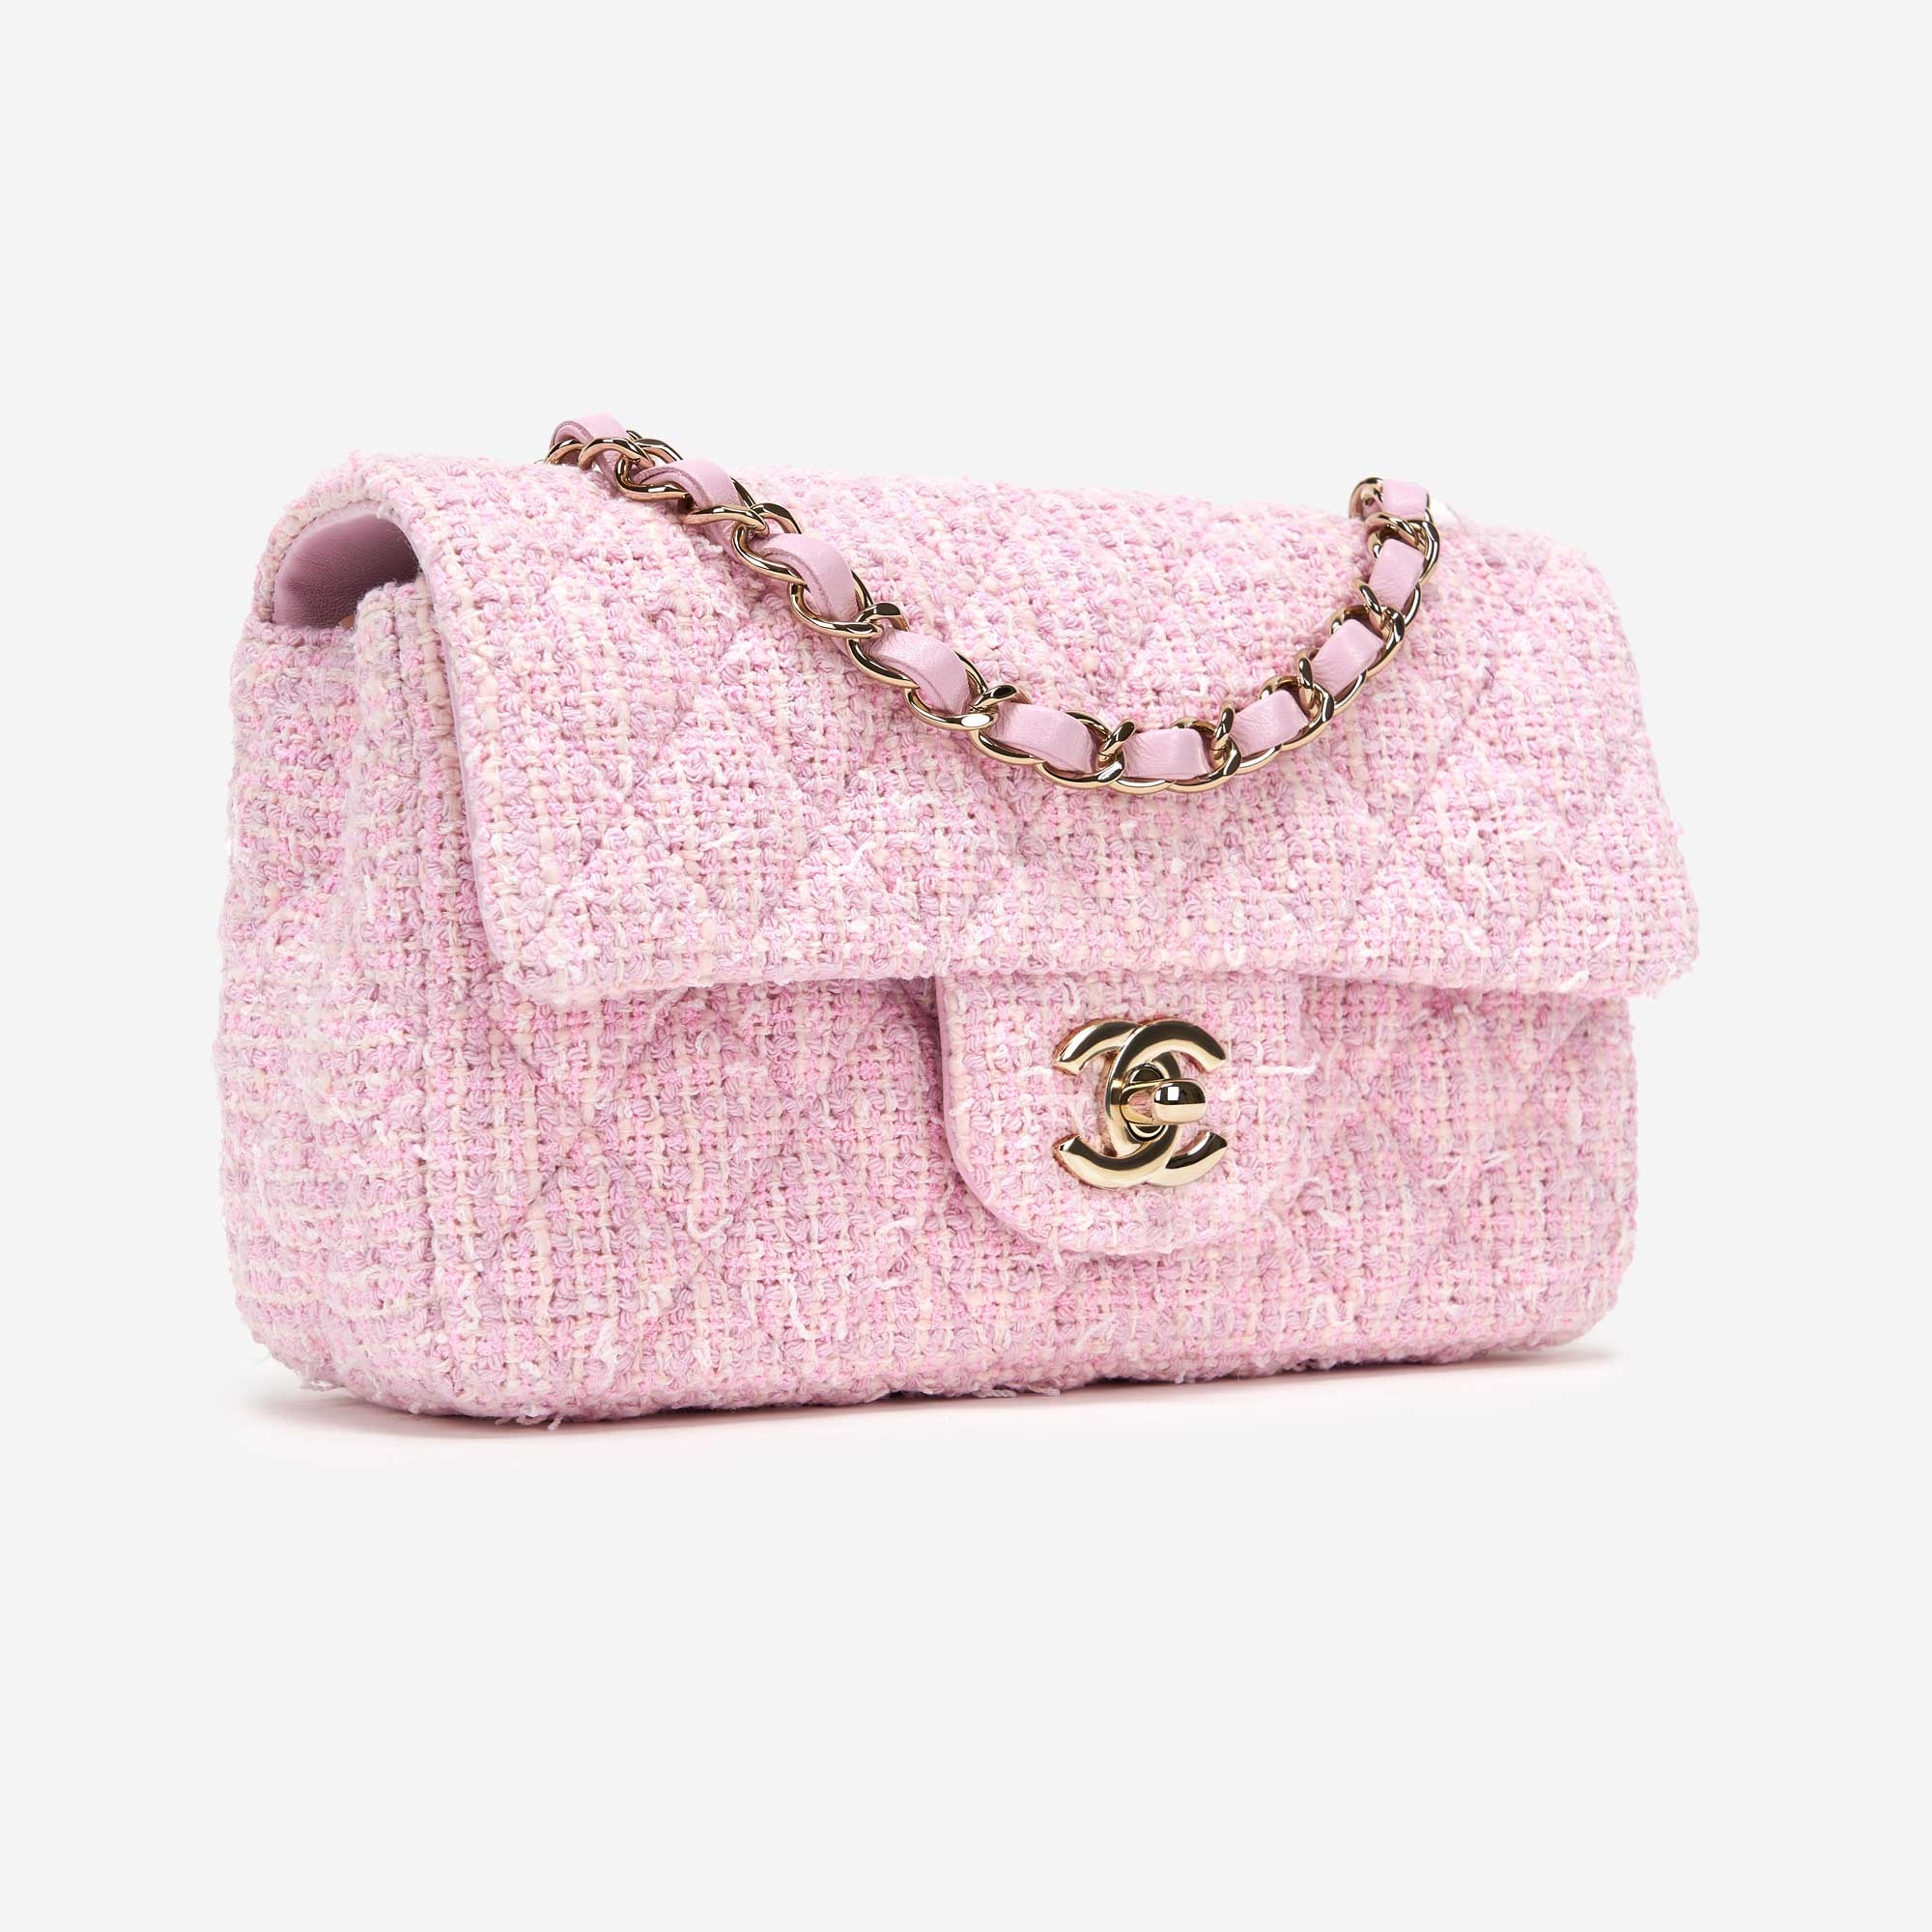 tweed handbag chanel